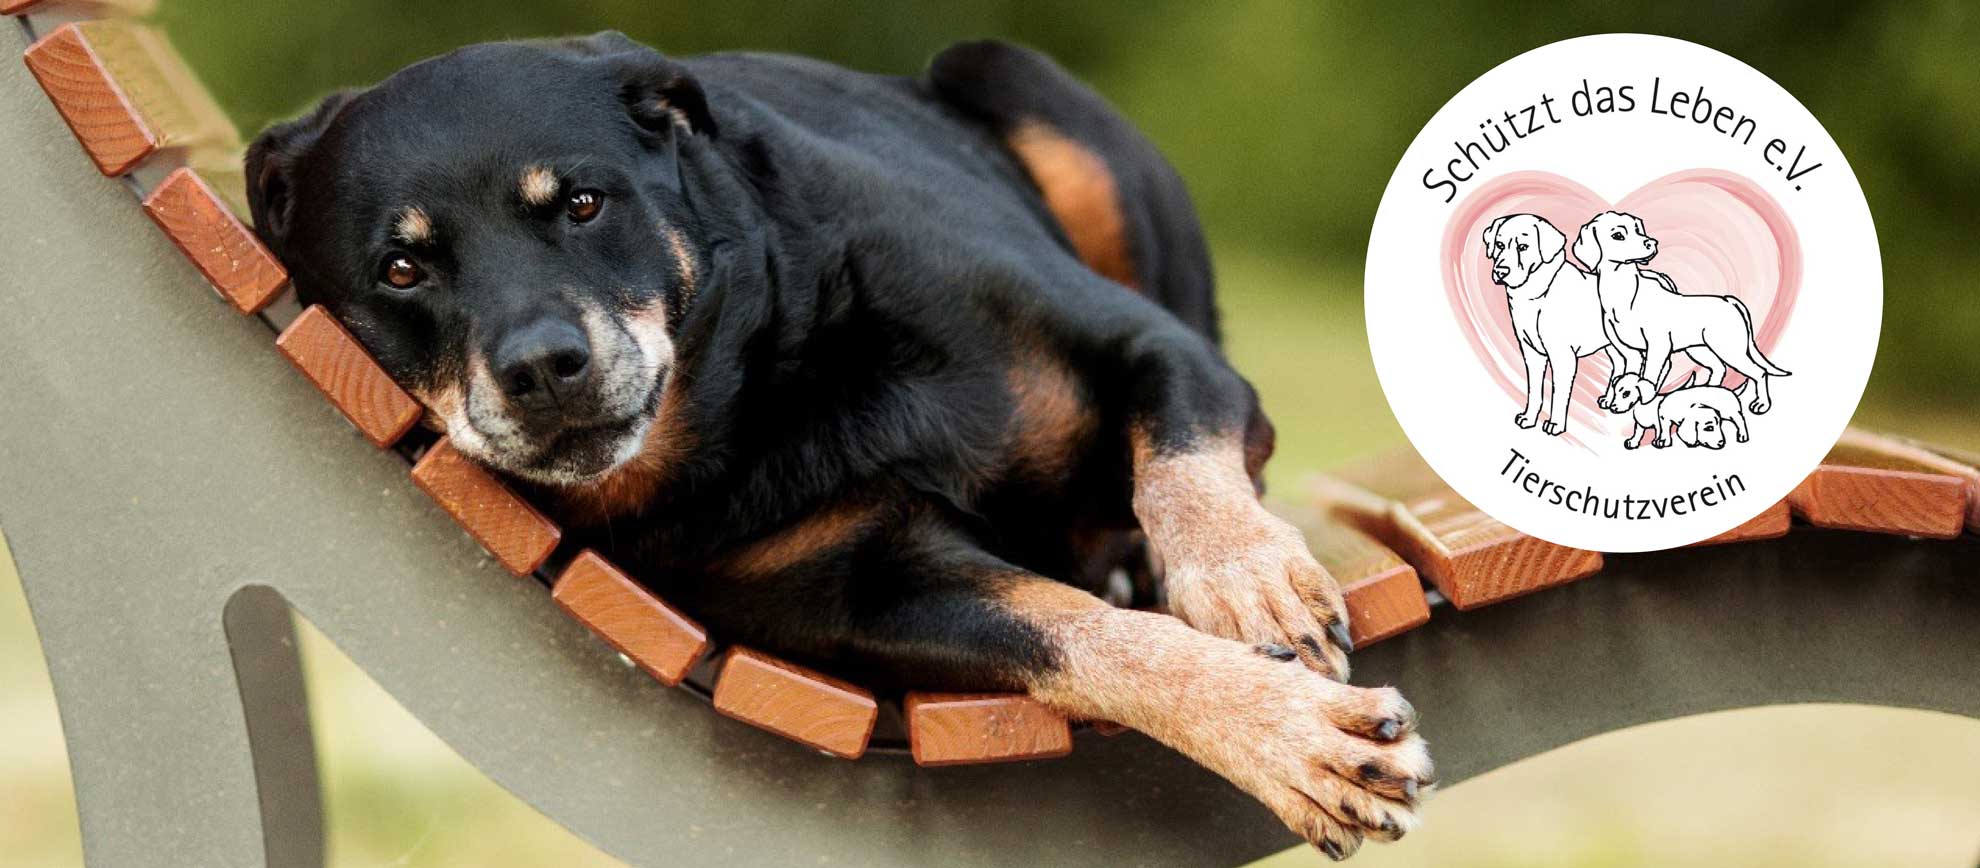 Hund liegt entspannt auf einer Bank, dazu das Logo vom Tierschutzverein Schützt das Leben e.V.